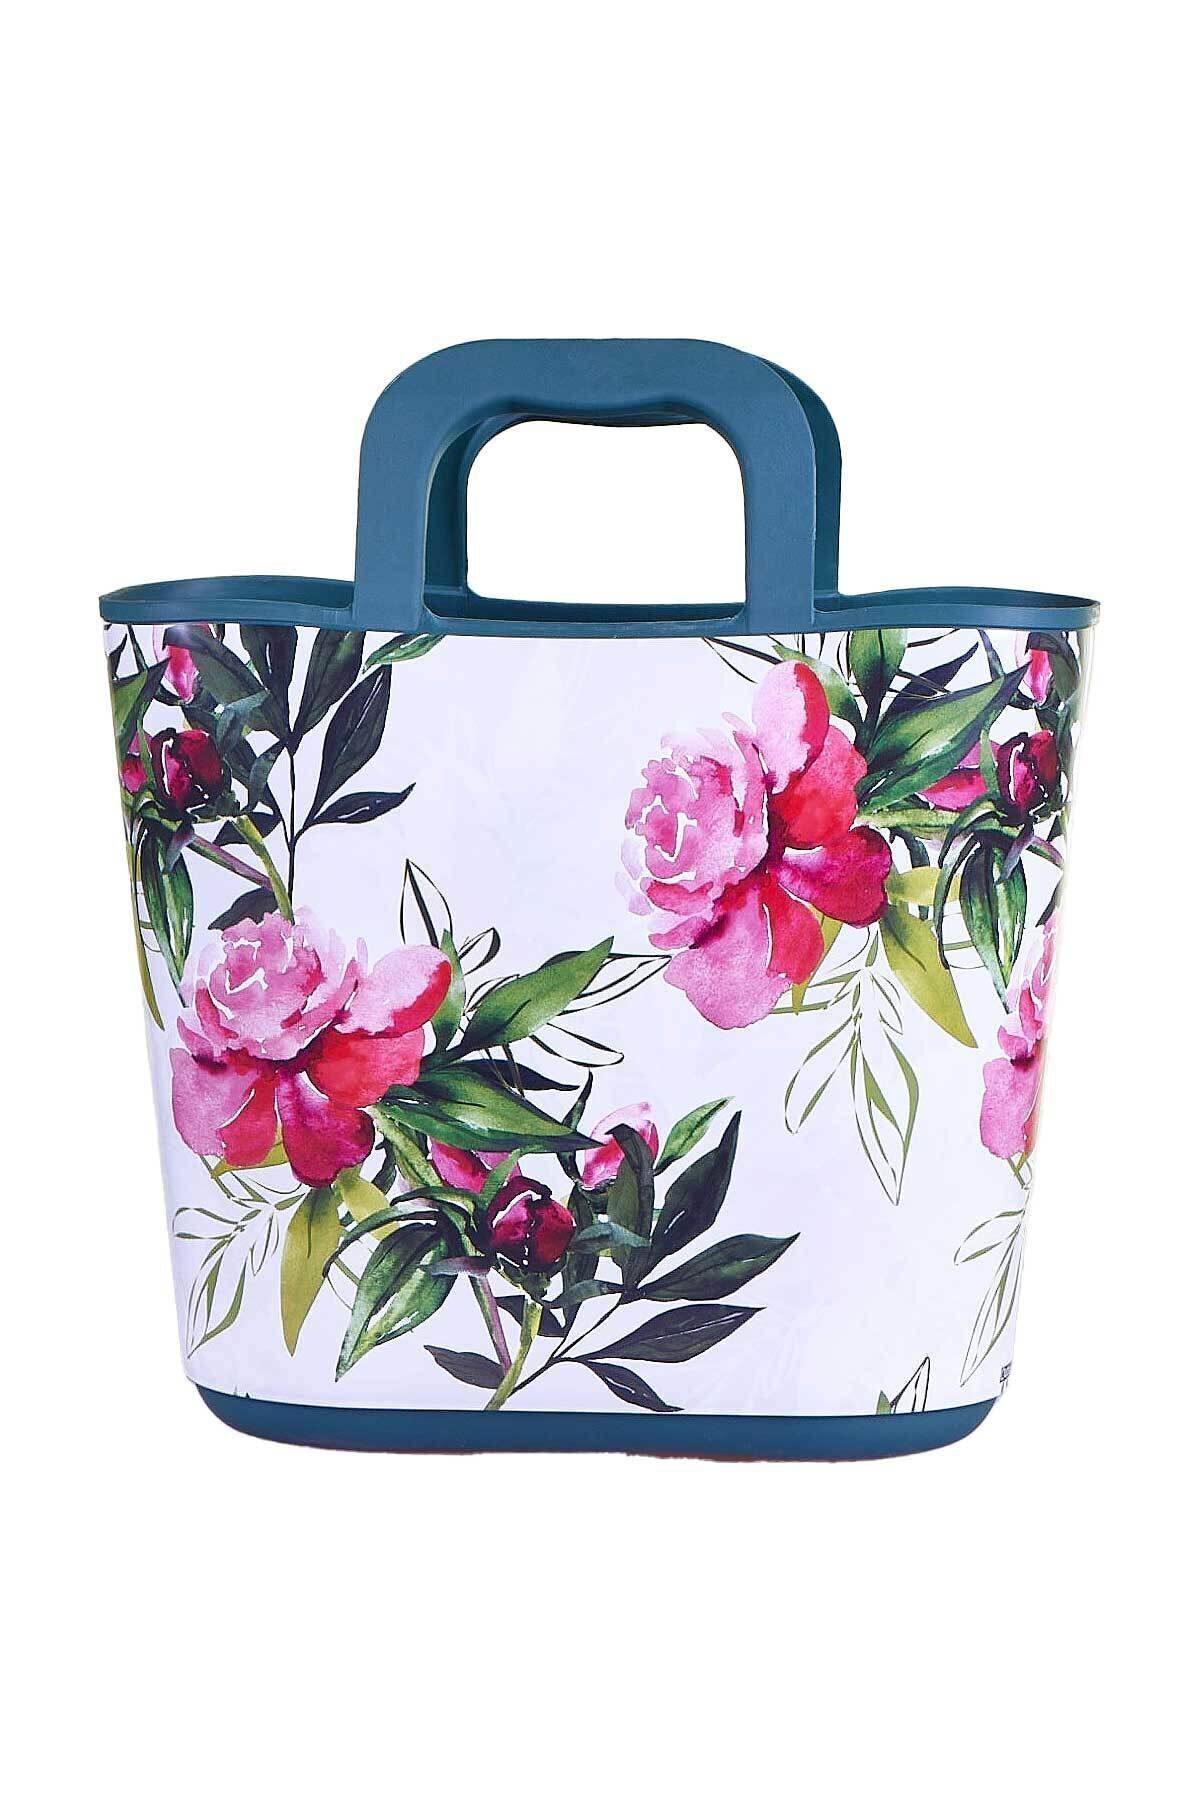 QUTU Hand Bag Rose Desenli Yeşil Plaj Ve El Çantası